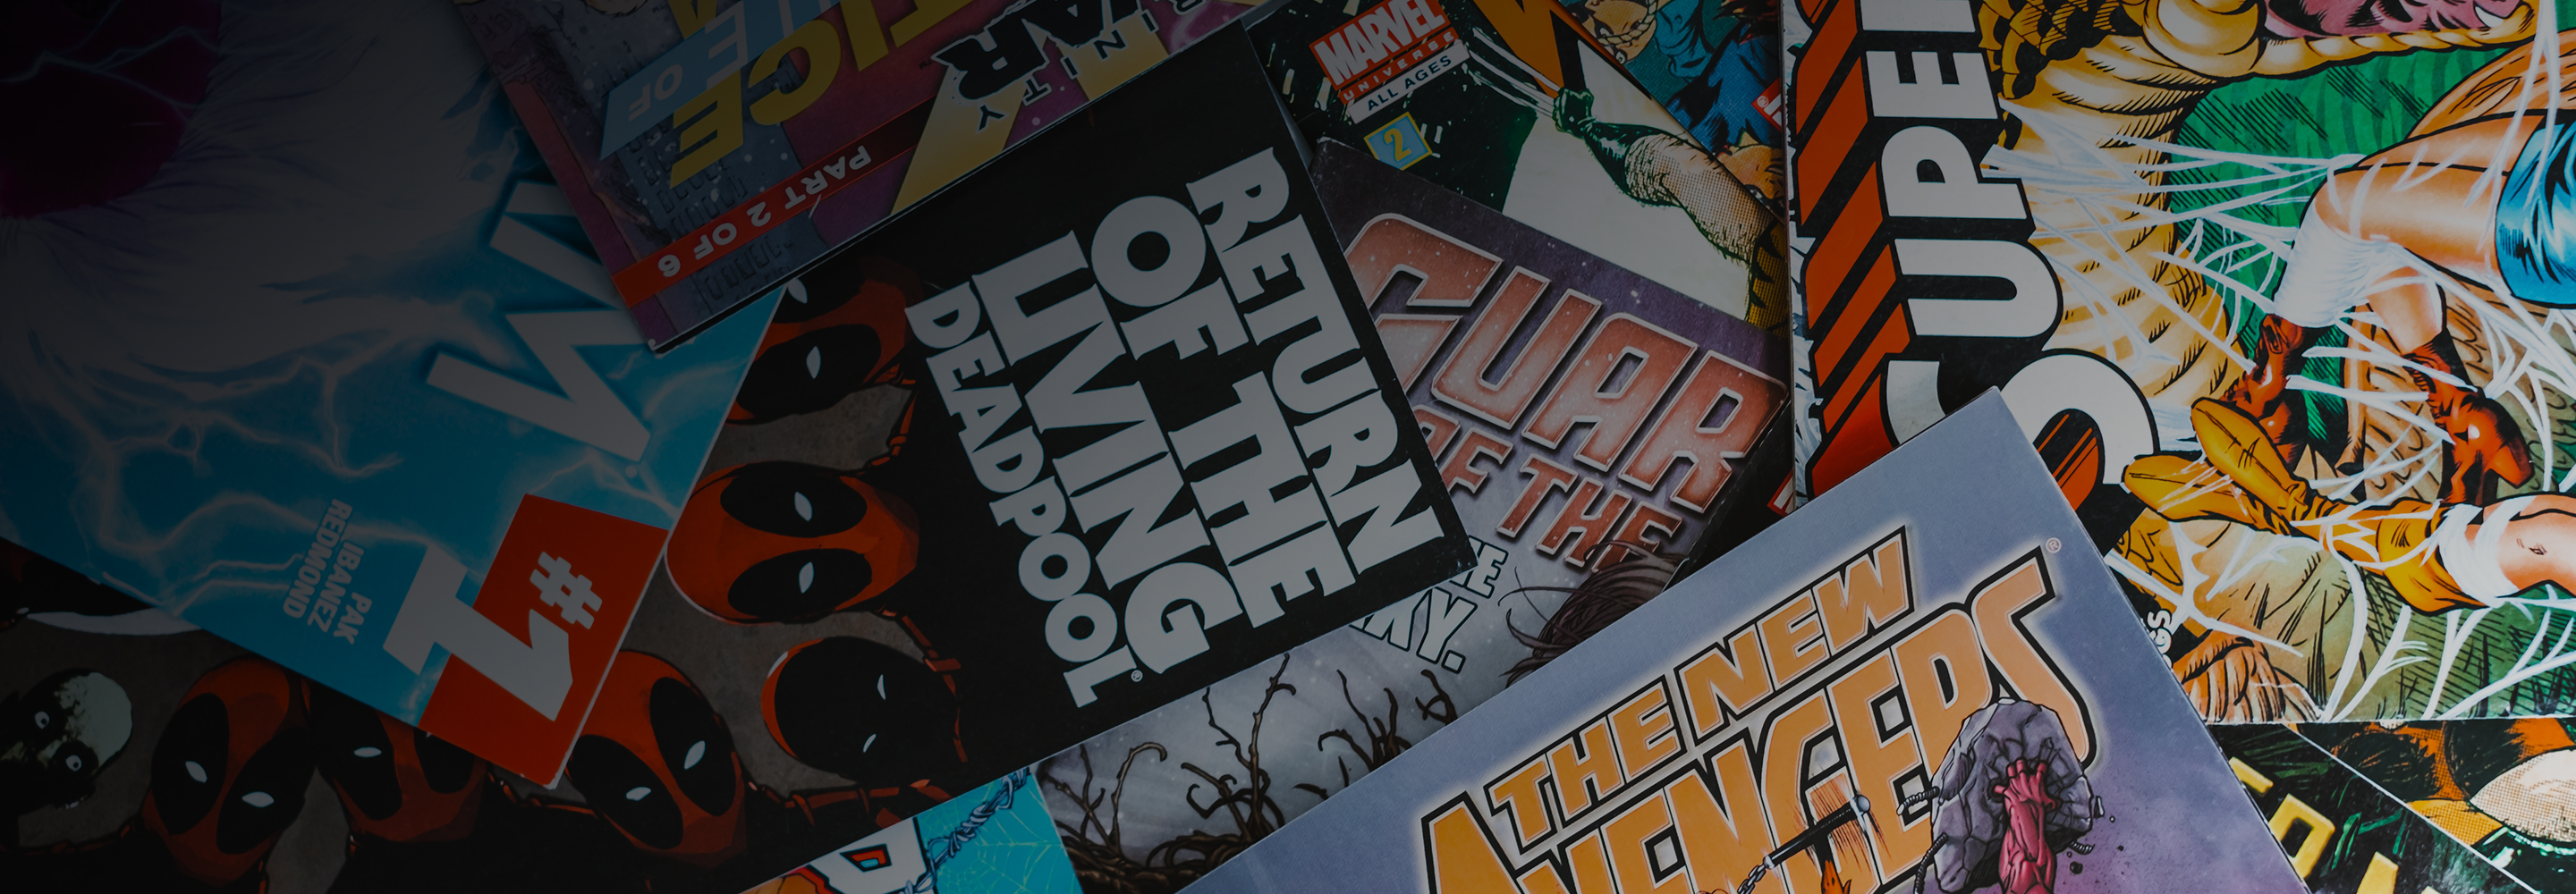 Договориться с издательством и записаться в библиотеку: 8 способов читать комиксы бесплатно